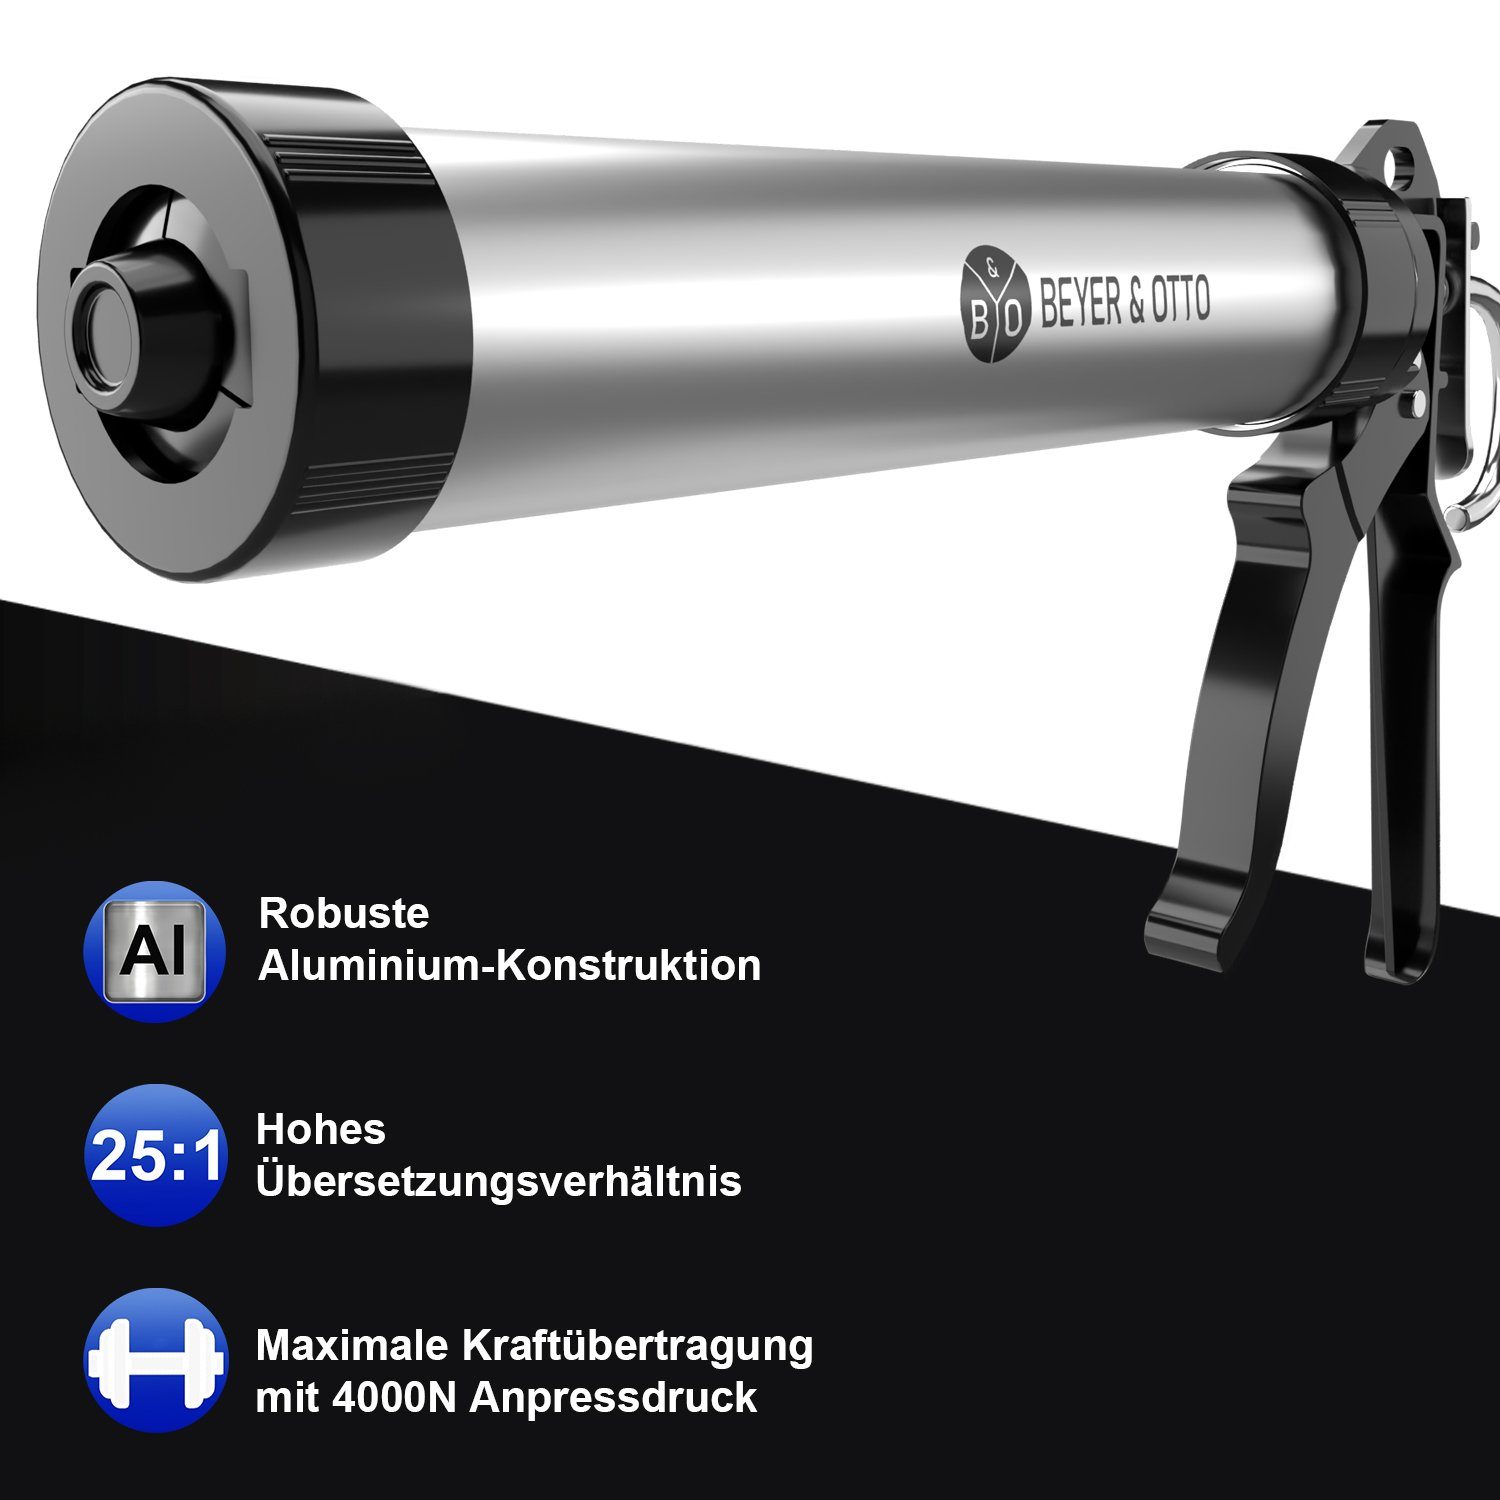 Aluminium für Beyer& ml Schlauchspitze Kartuschenpresse, Beyer&Otto inkl. Beutel, Kartuschenpistole 400